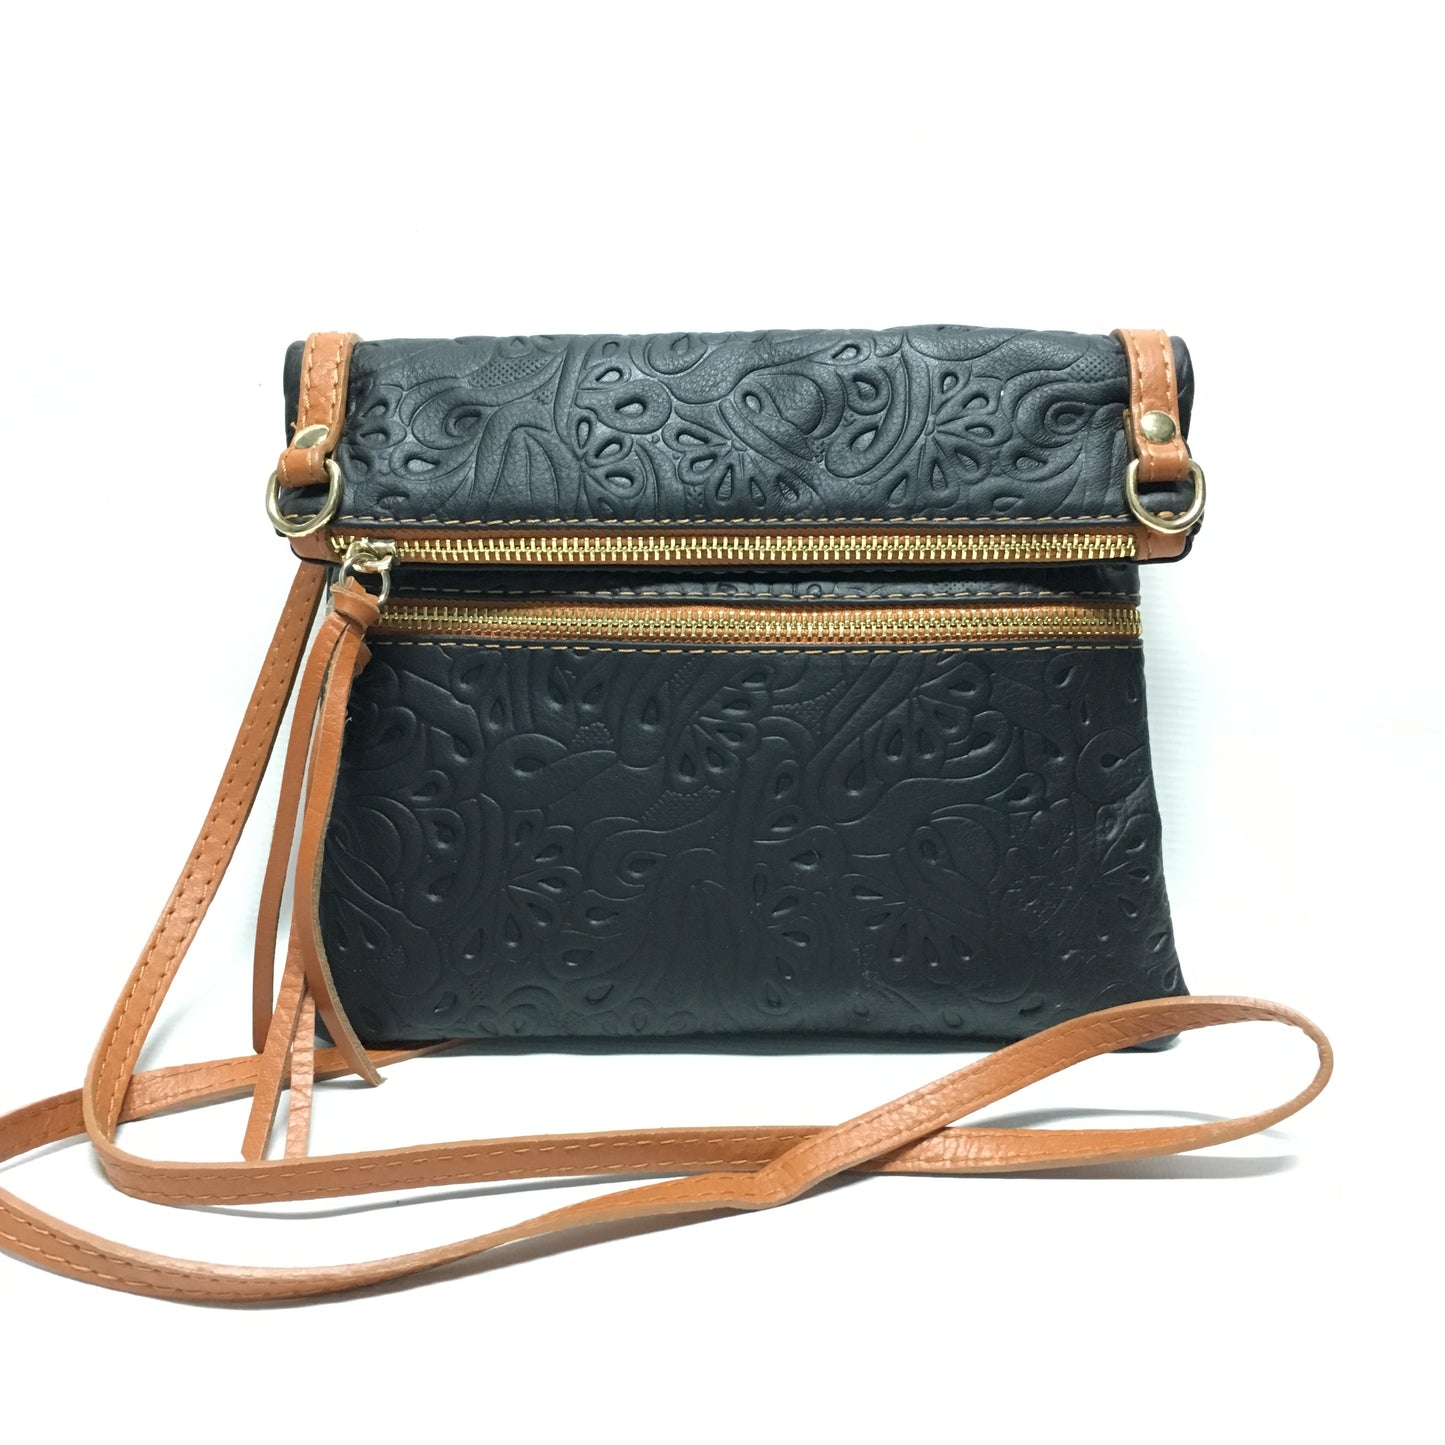 tooled black and tan italian leather purse